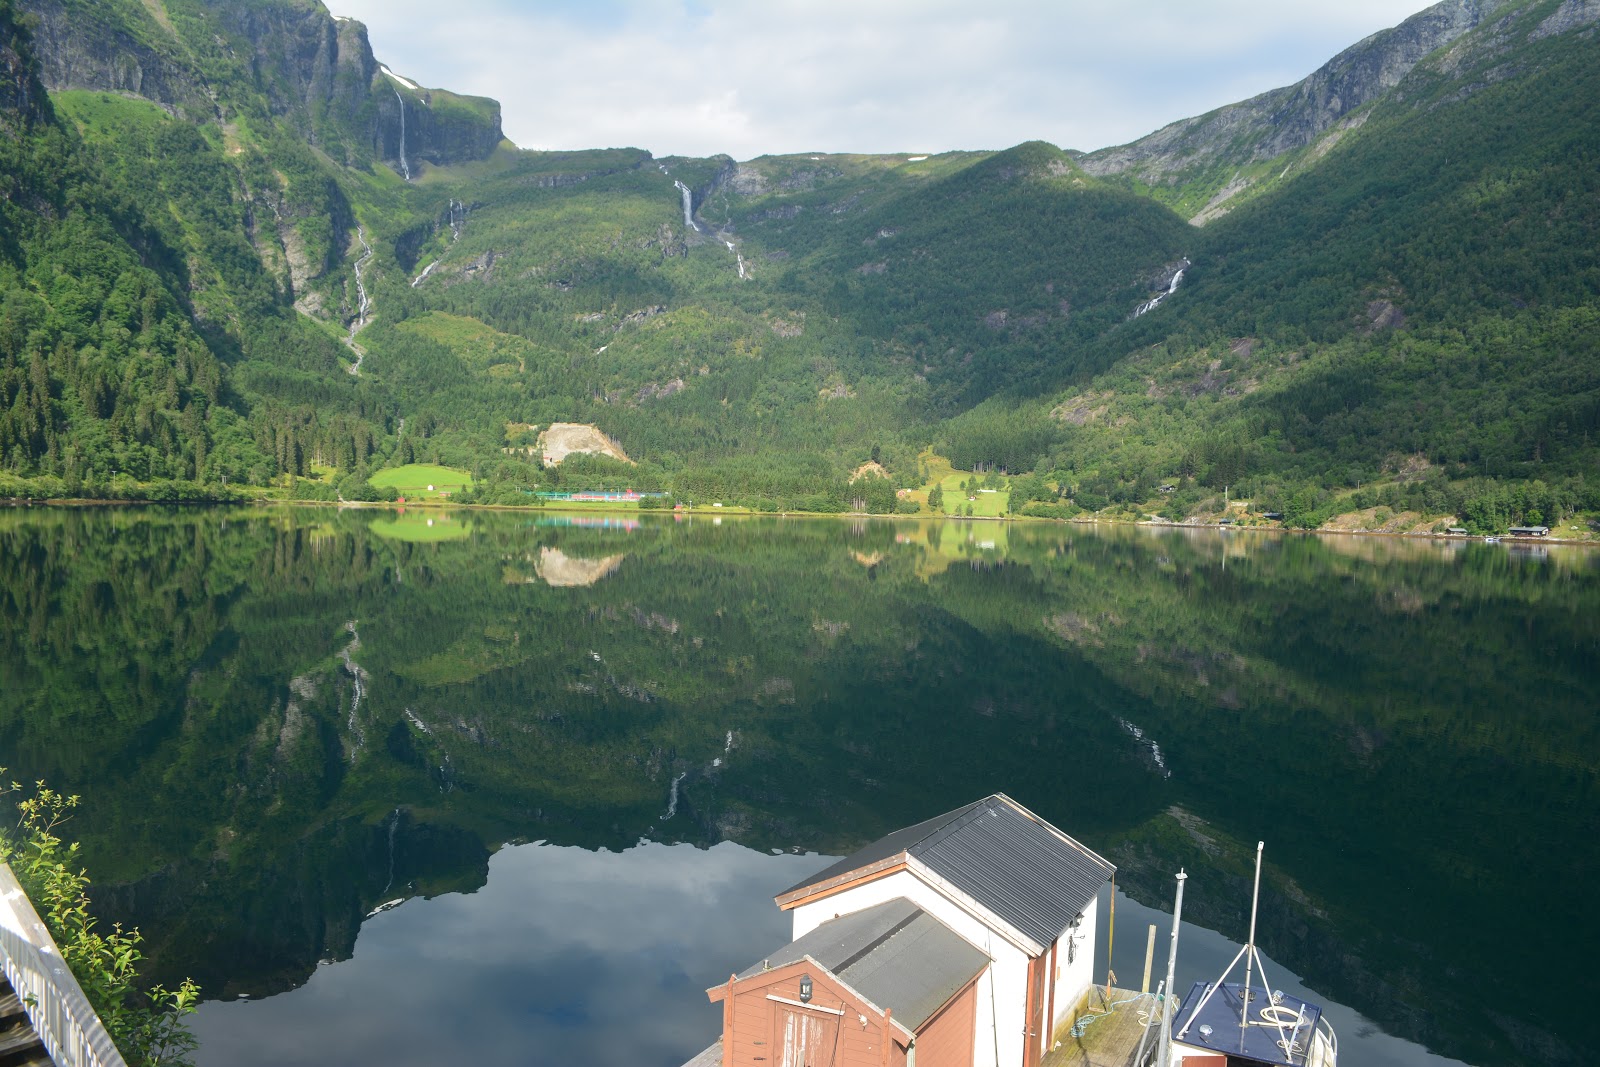 Miss Happyfeet 16 Reasons To Visit Vik I Sogn Norway